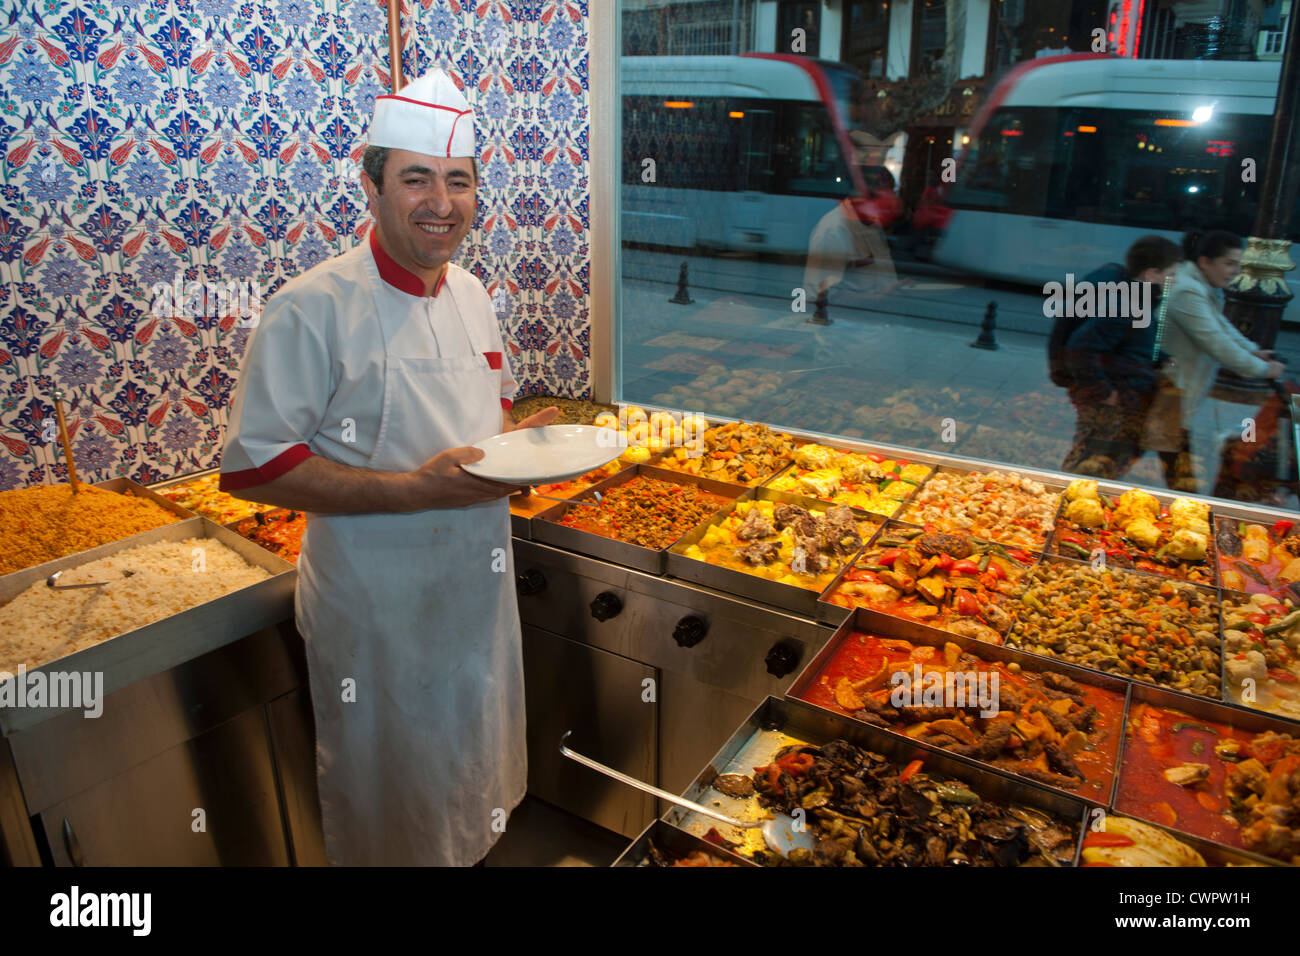 Türkei, Istanbul, Sultanahmet, Divan Yolu, Baran Restaurant Stock Photo